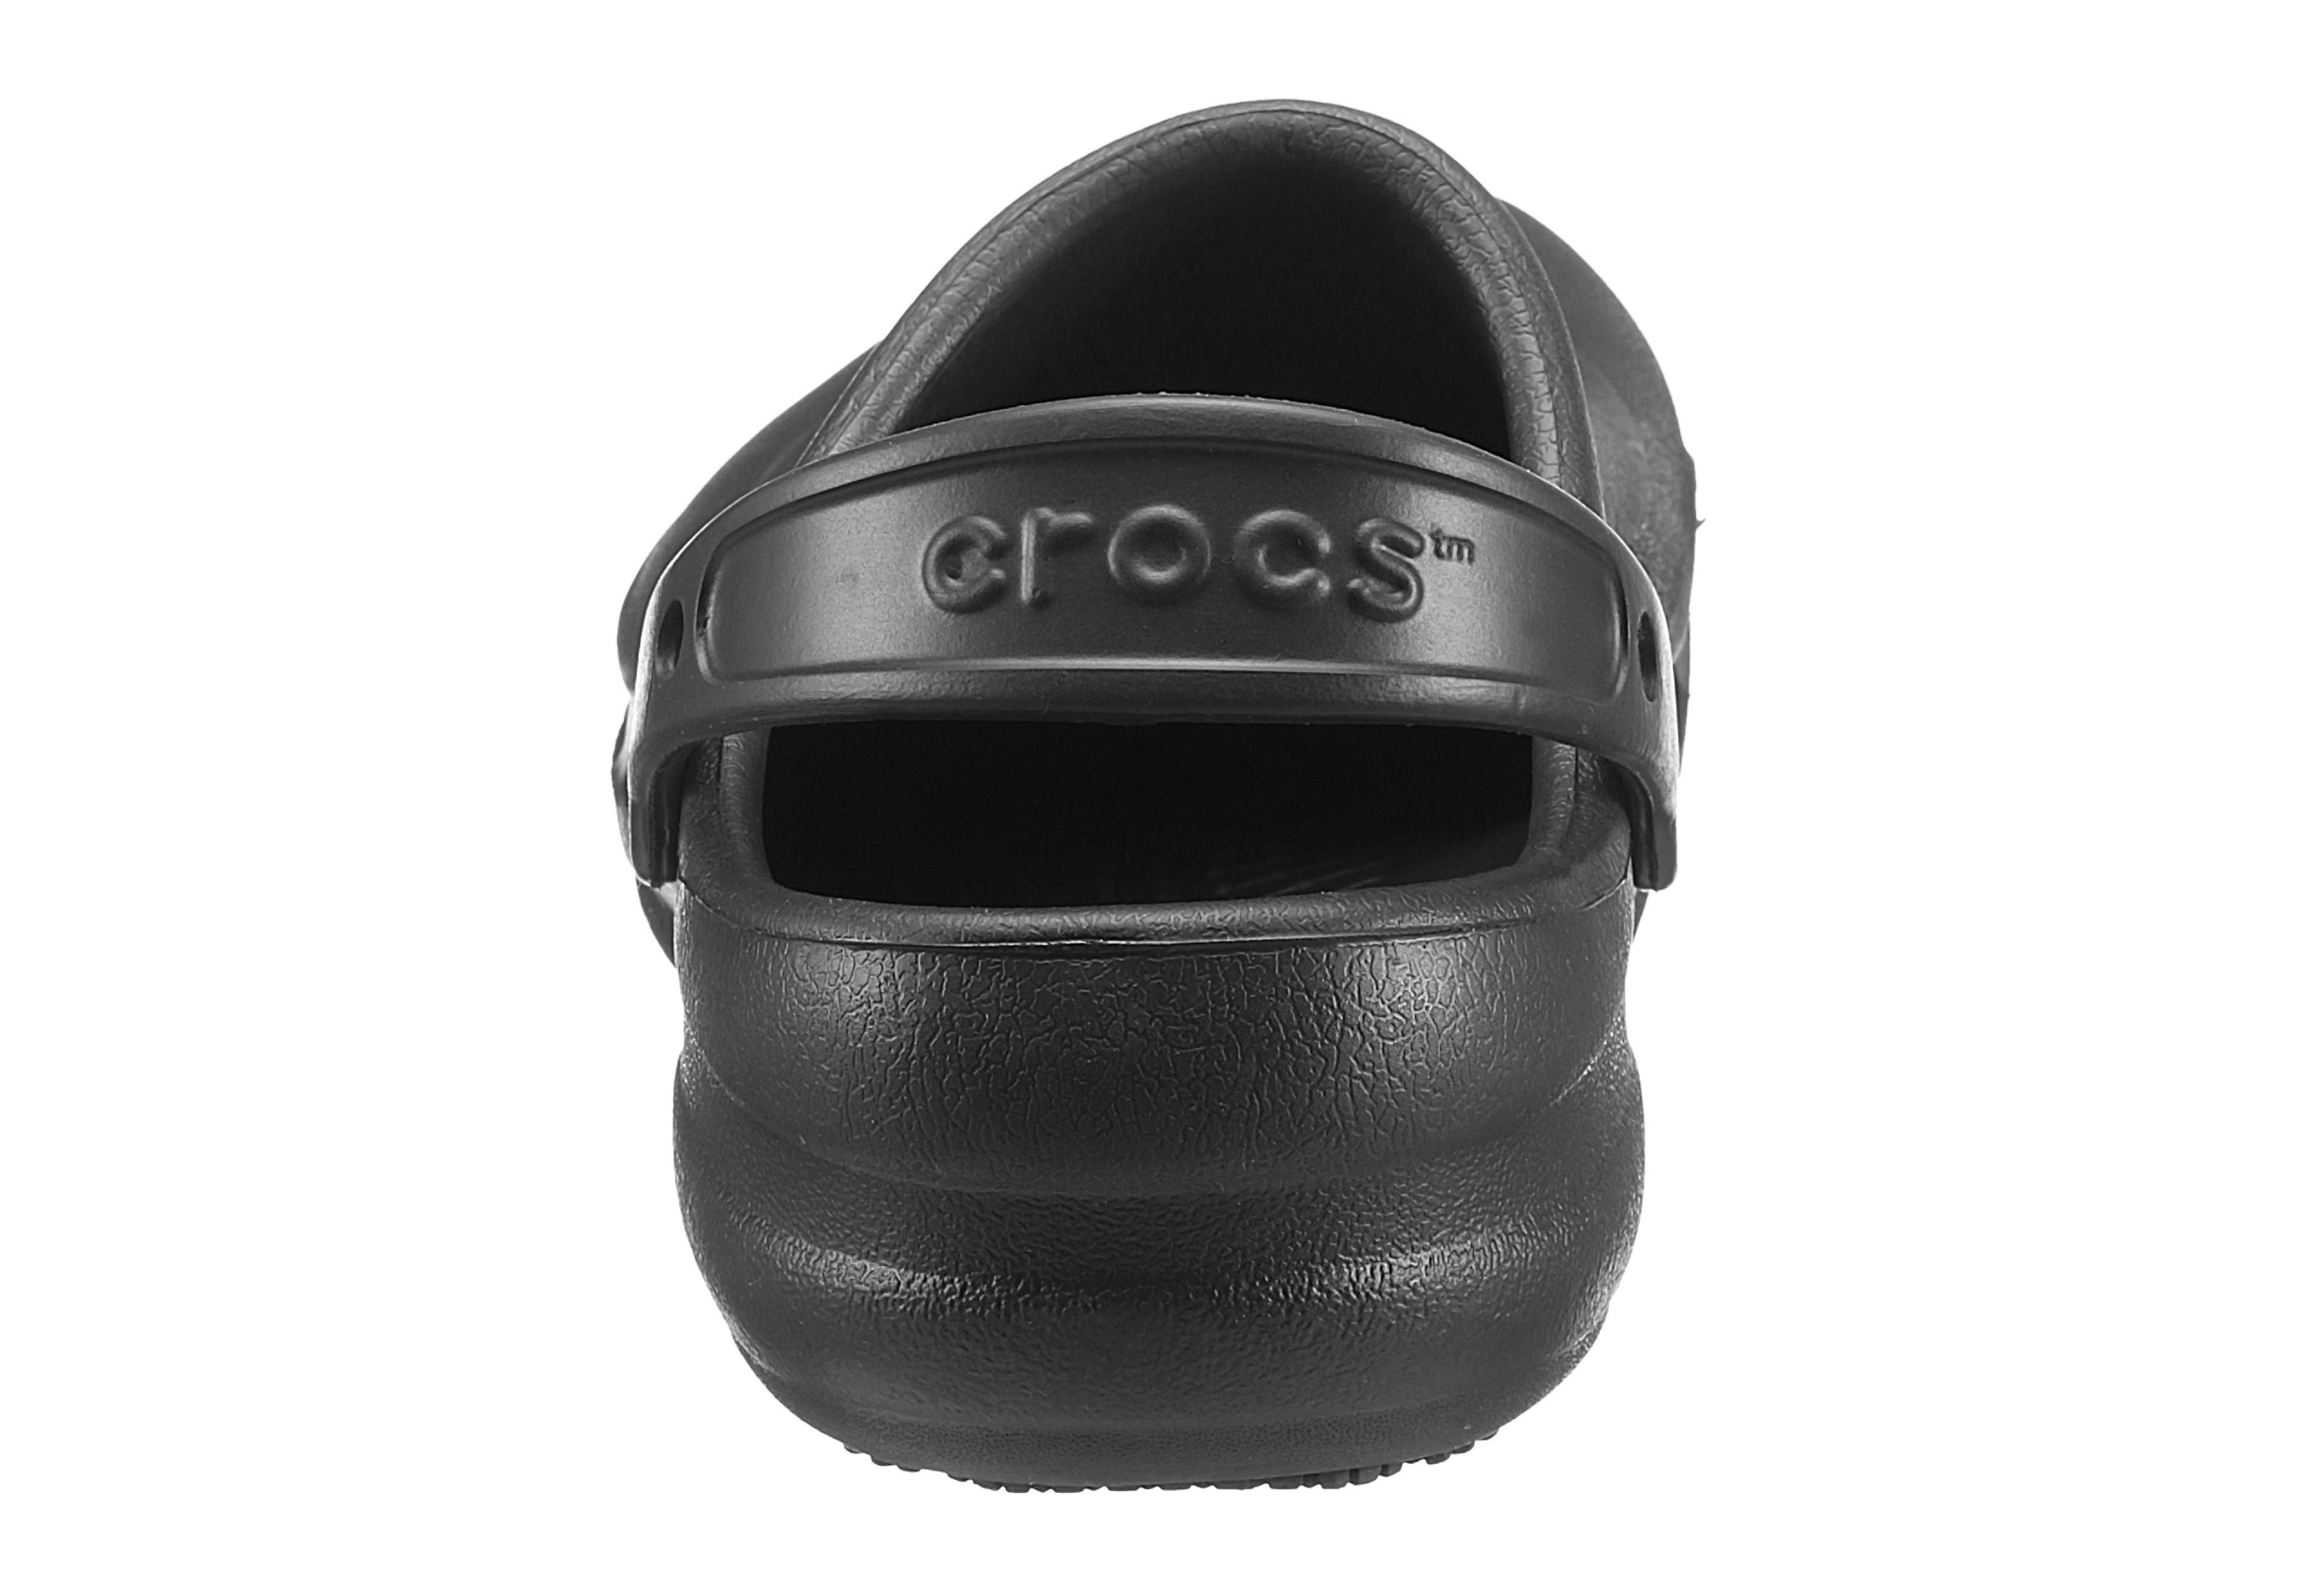 BISTRO Fußbereich Crocs schwarz geschlossenem Clog mit